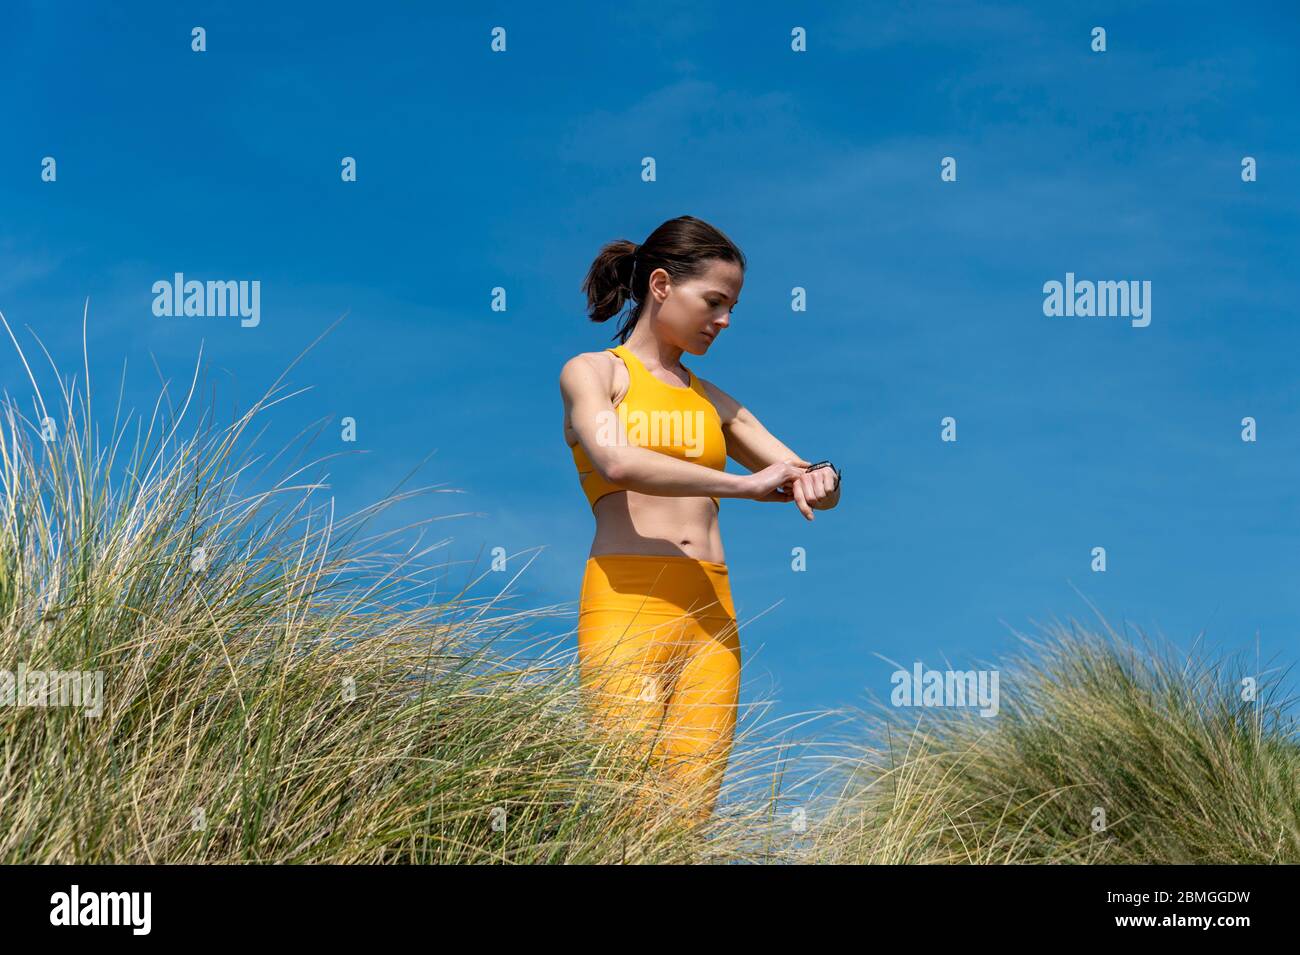 femme sportive et ajustée qui vérifie ses objectifs d'entraînement sur une montre intelligente. Extérieur, porter des vêtements de sport jaunes. Banque D'Images